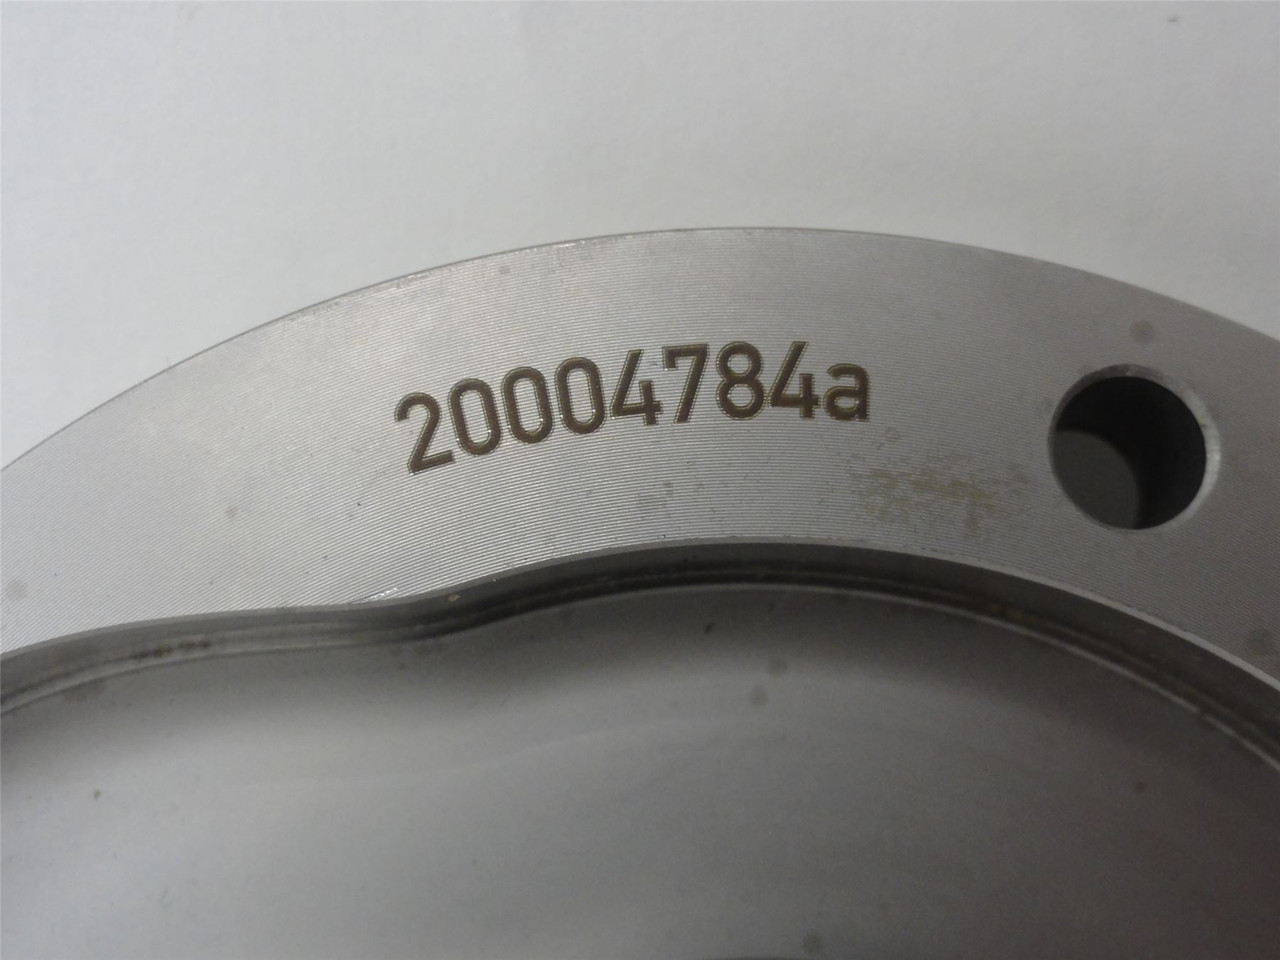 Tipper Tie 20004784a; Cam Disc; 18mm ID; 113mm OD